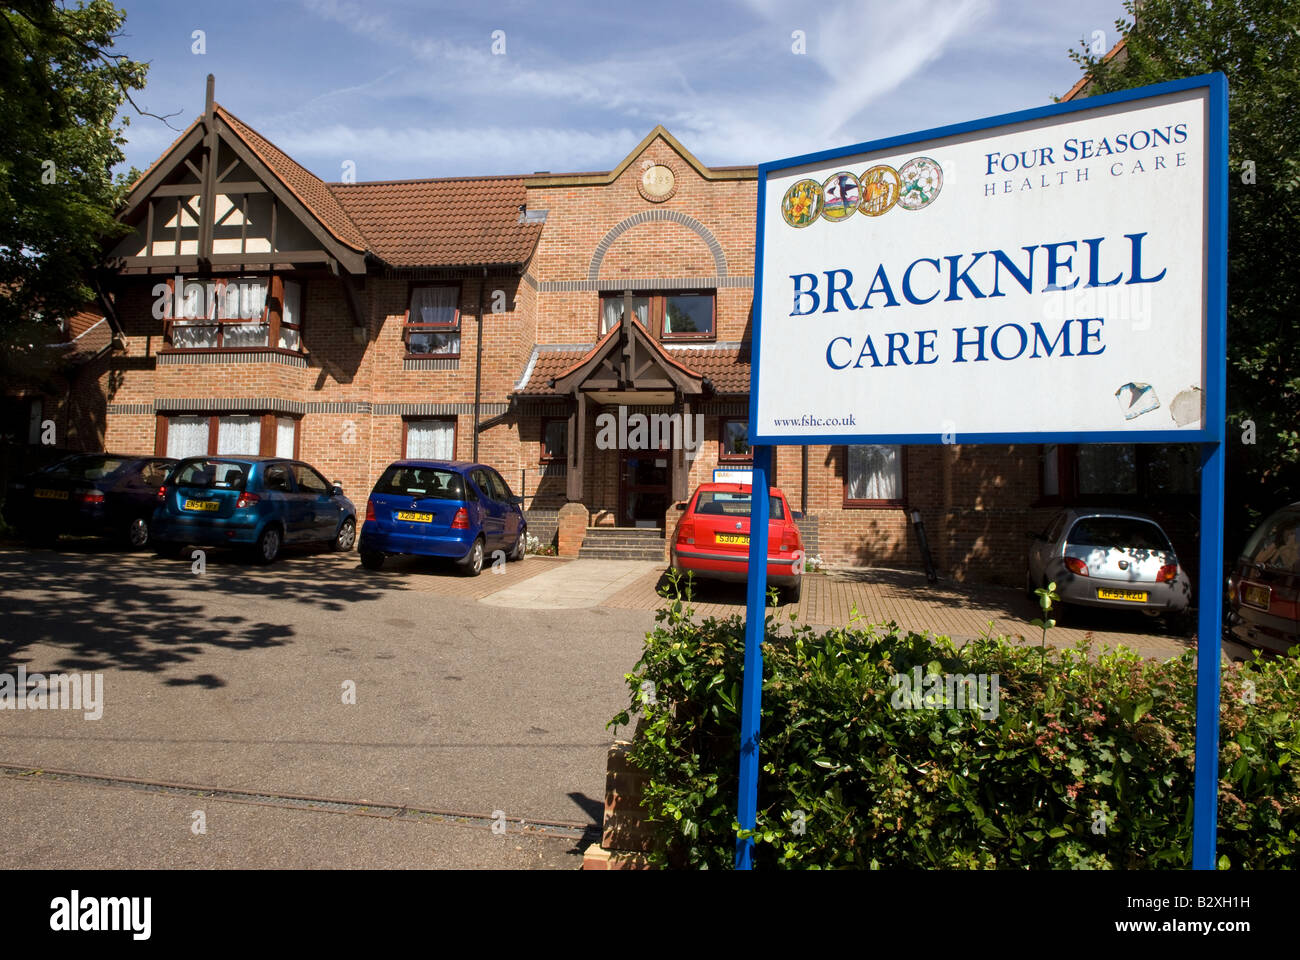 Vue extérieure des quatre saisons Accueil Soins résidentiels, Bracknell, Berkshire, Royaume-Uni. L'entreprise s'occupe d'environ 17 000 personnes âgées et vulnérables. Banque D'Images